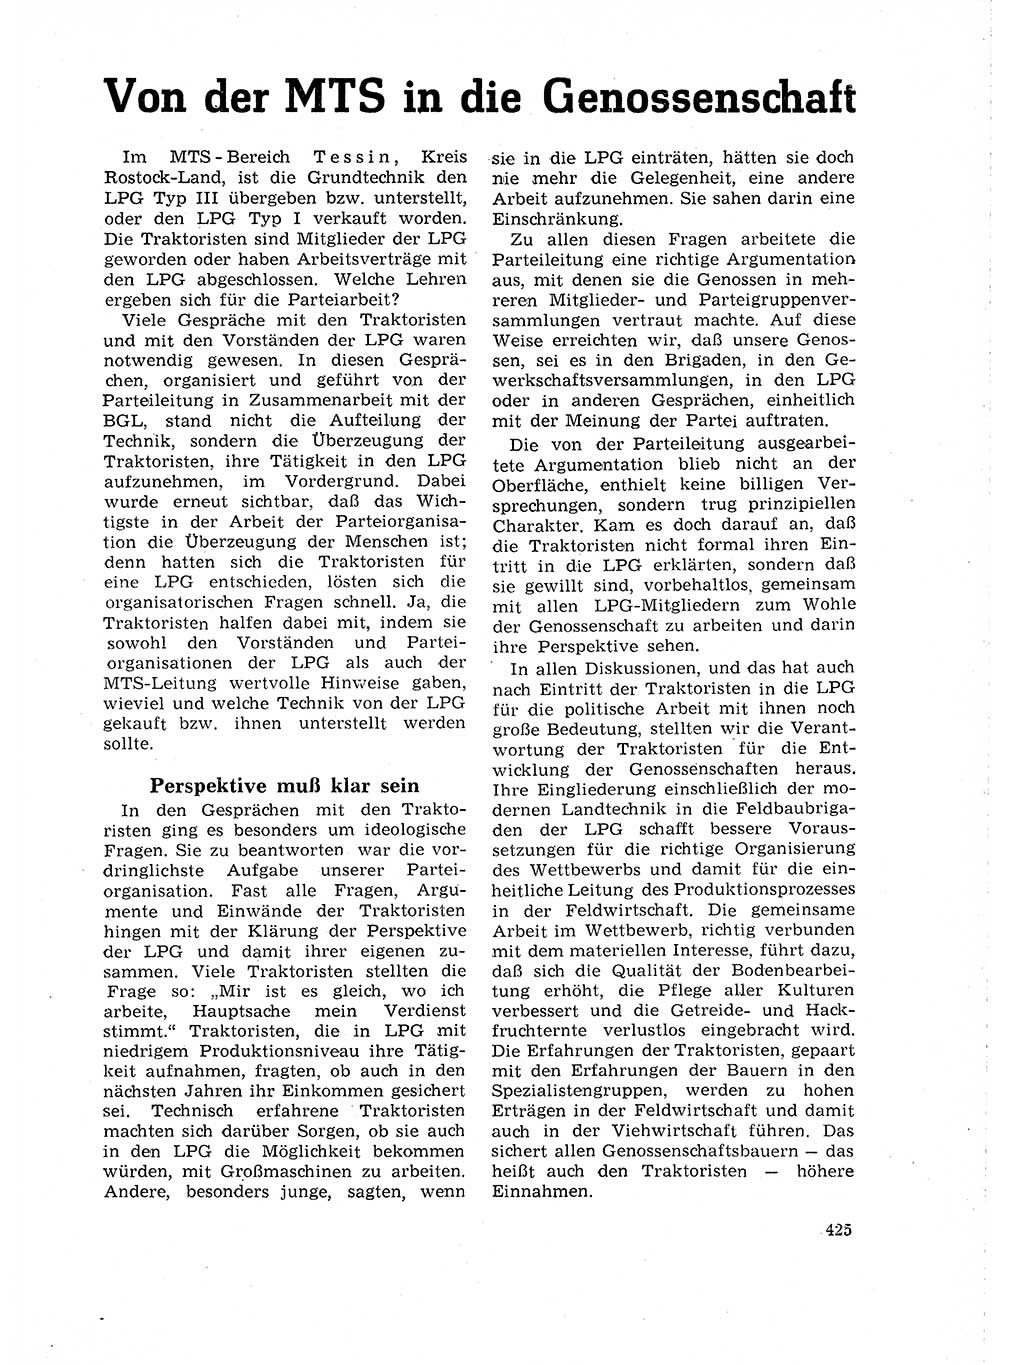 Neuer Weg (NW), Organ des Zentralkomitees (ZK) der SED (Sozialistische Einheitspartei Deutschlands) für Fragen des Parteilebens, 18. Jahrgang [Deutsche Demokratische Republik (DDR)] 1963, Seite 425 (NW ZK SED DDR 1963, S. 425)